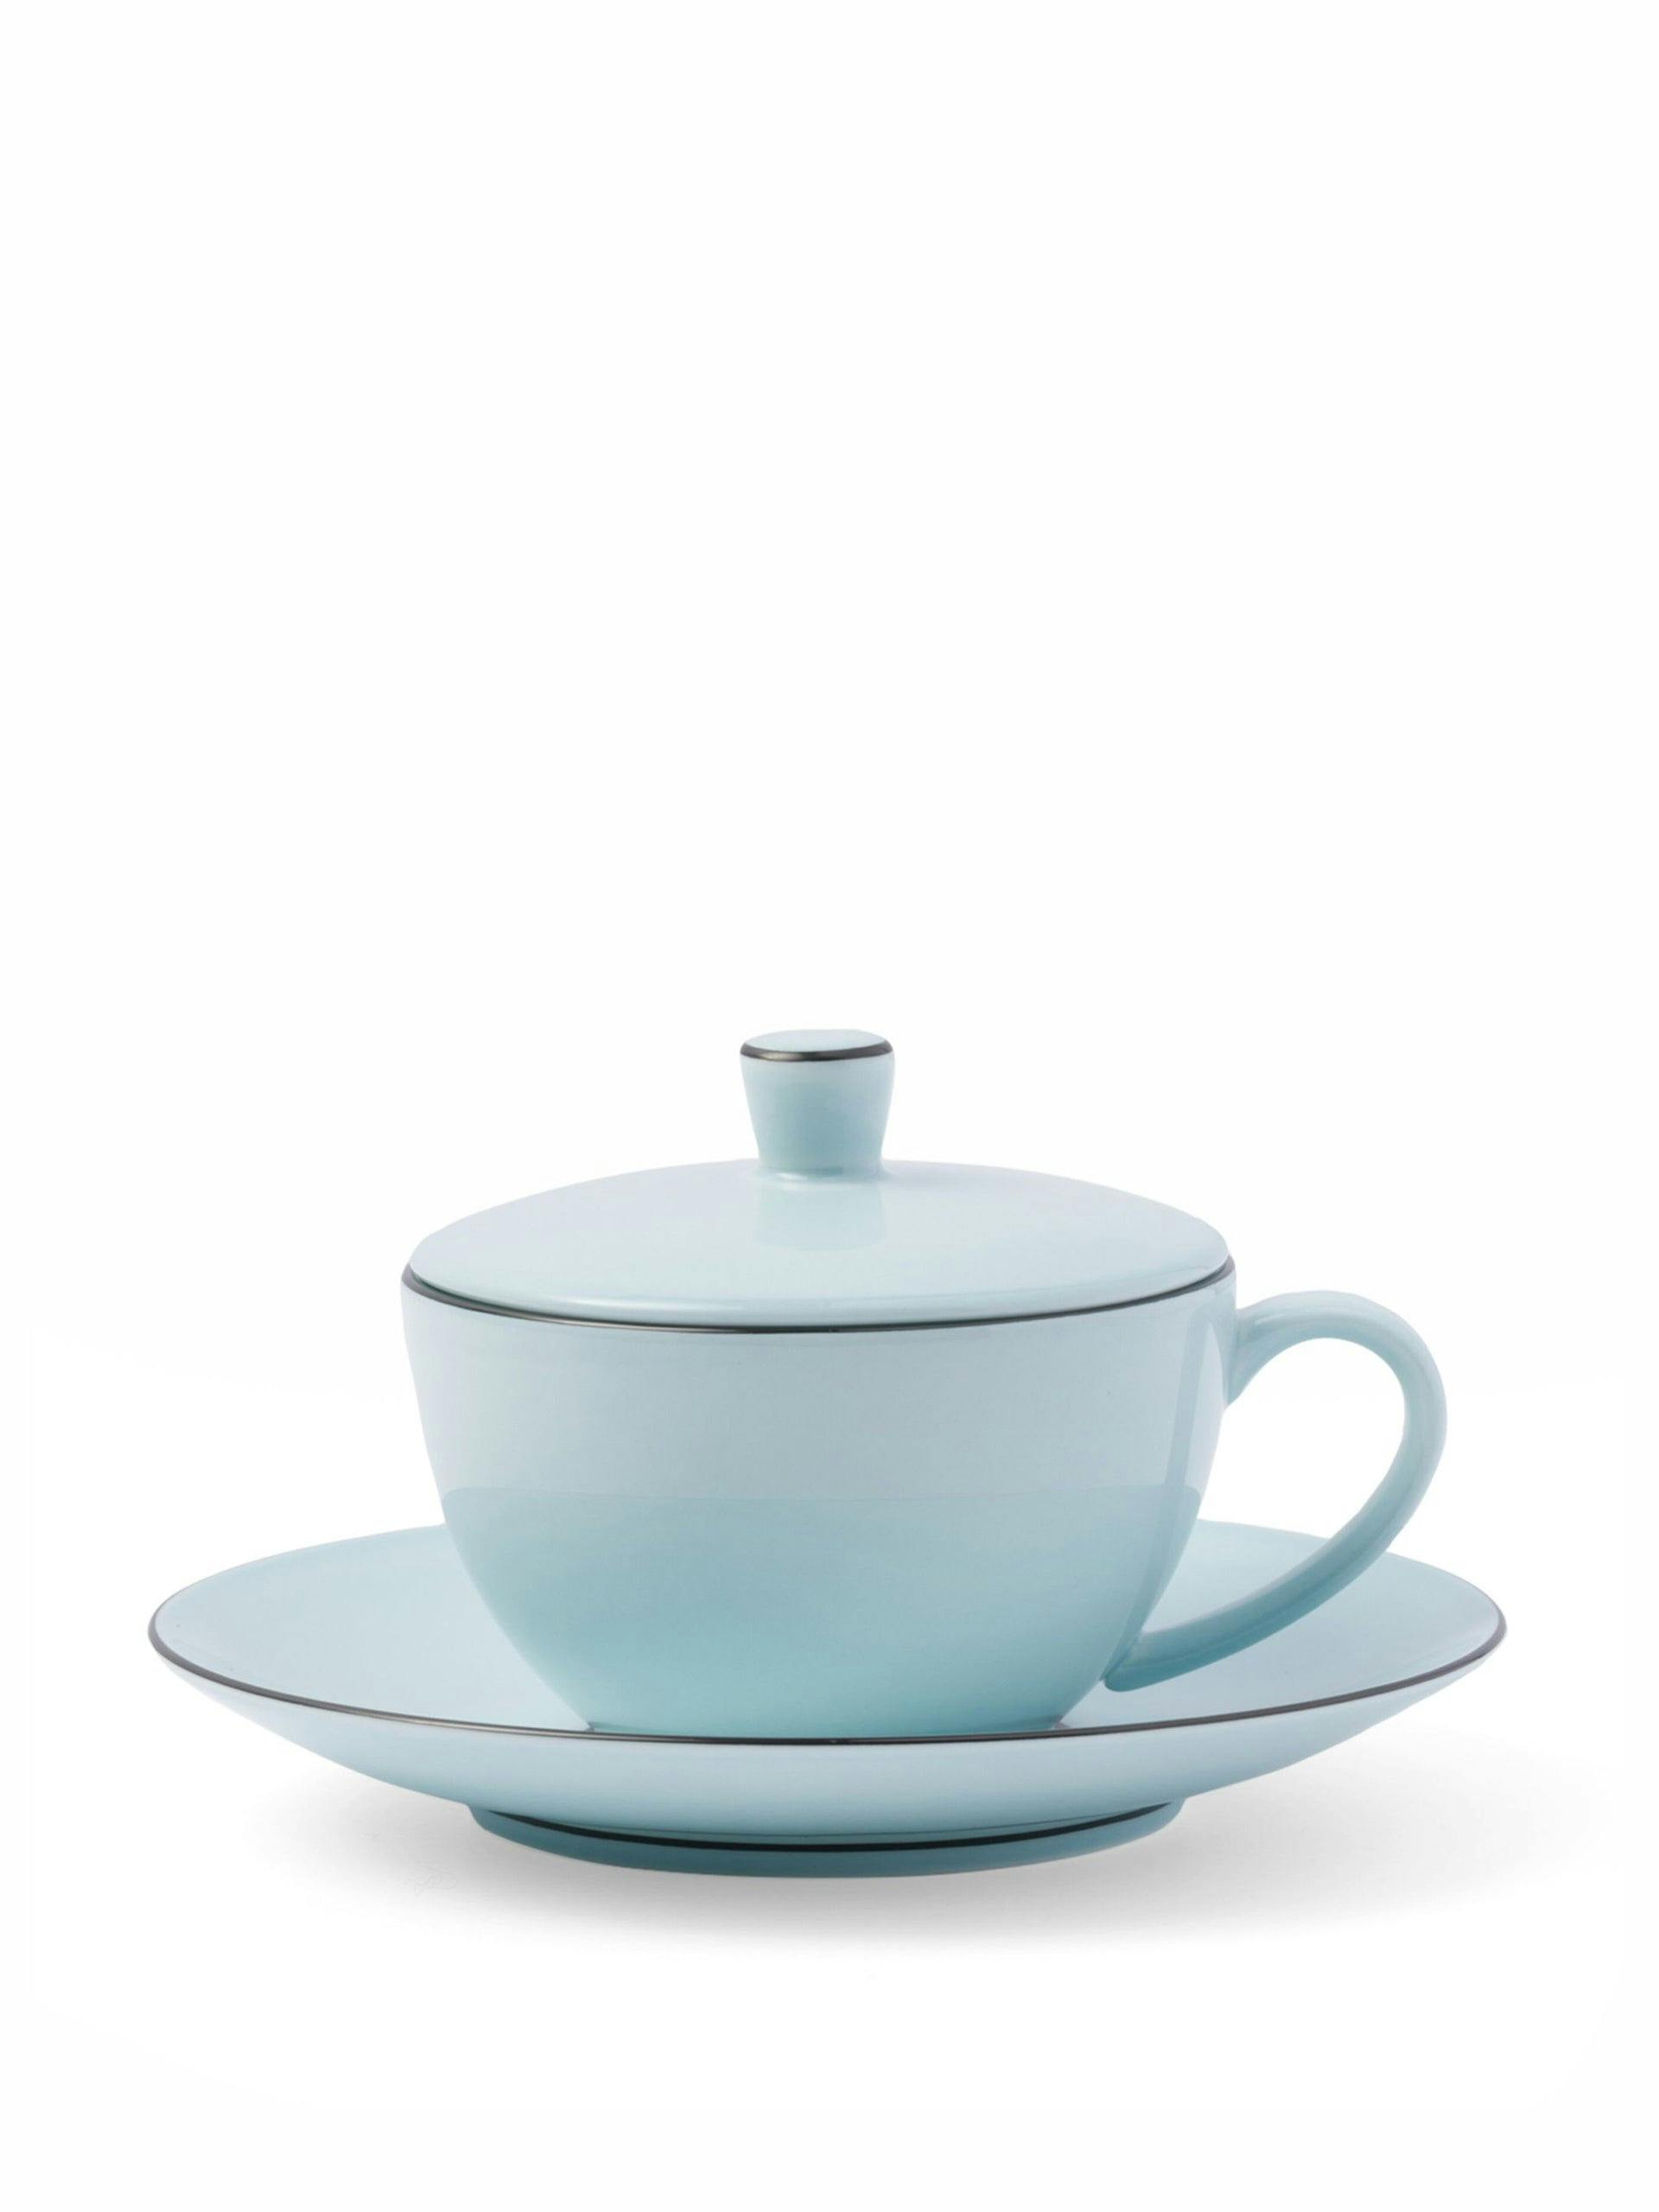 Porcelain tea cup and saucer set